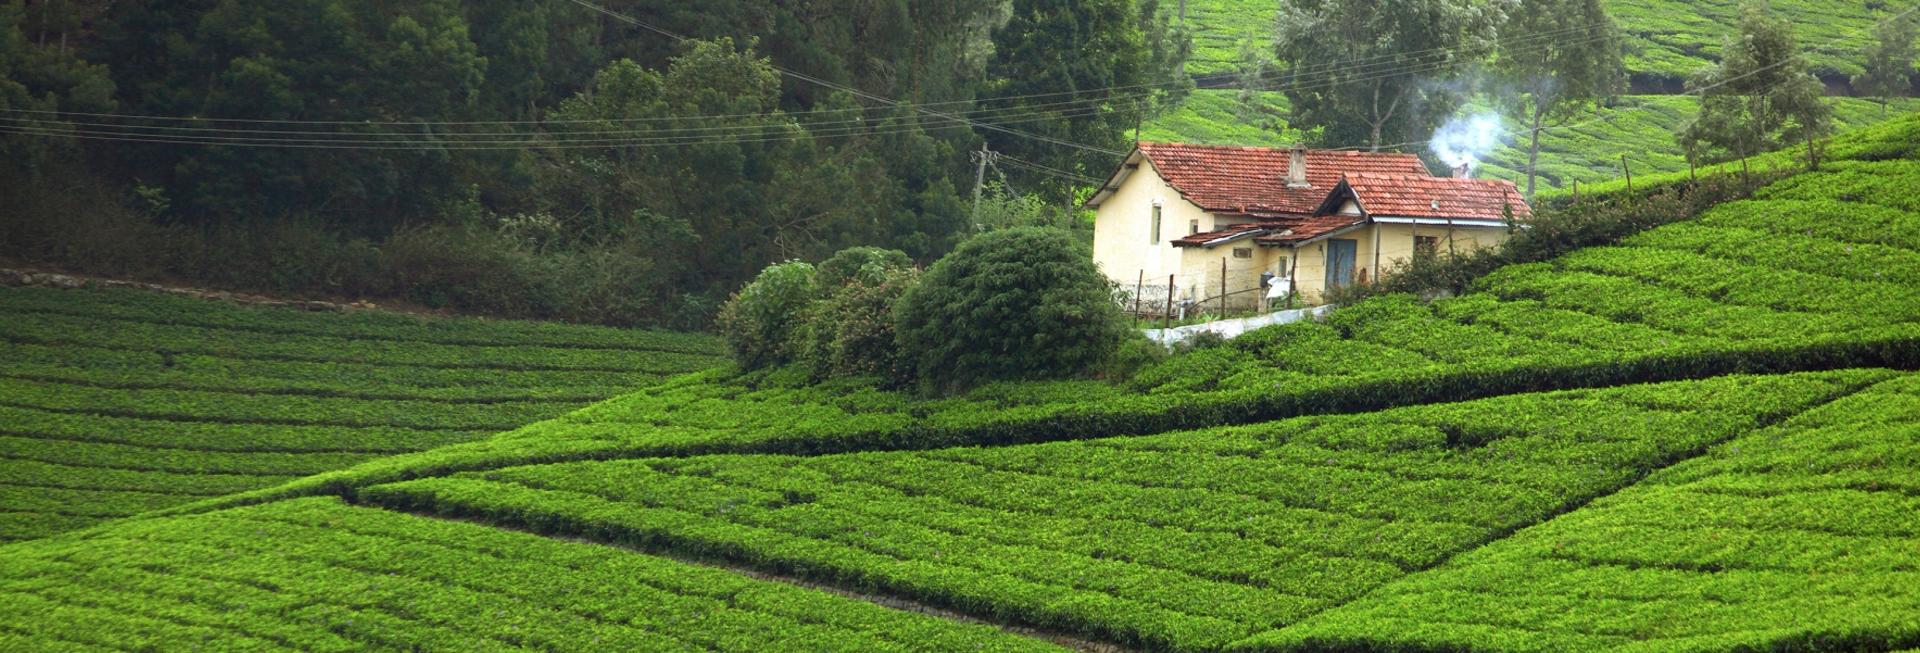 Tea Hills, Munnar, Kerala